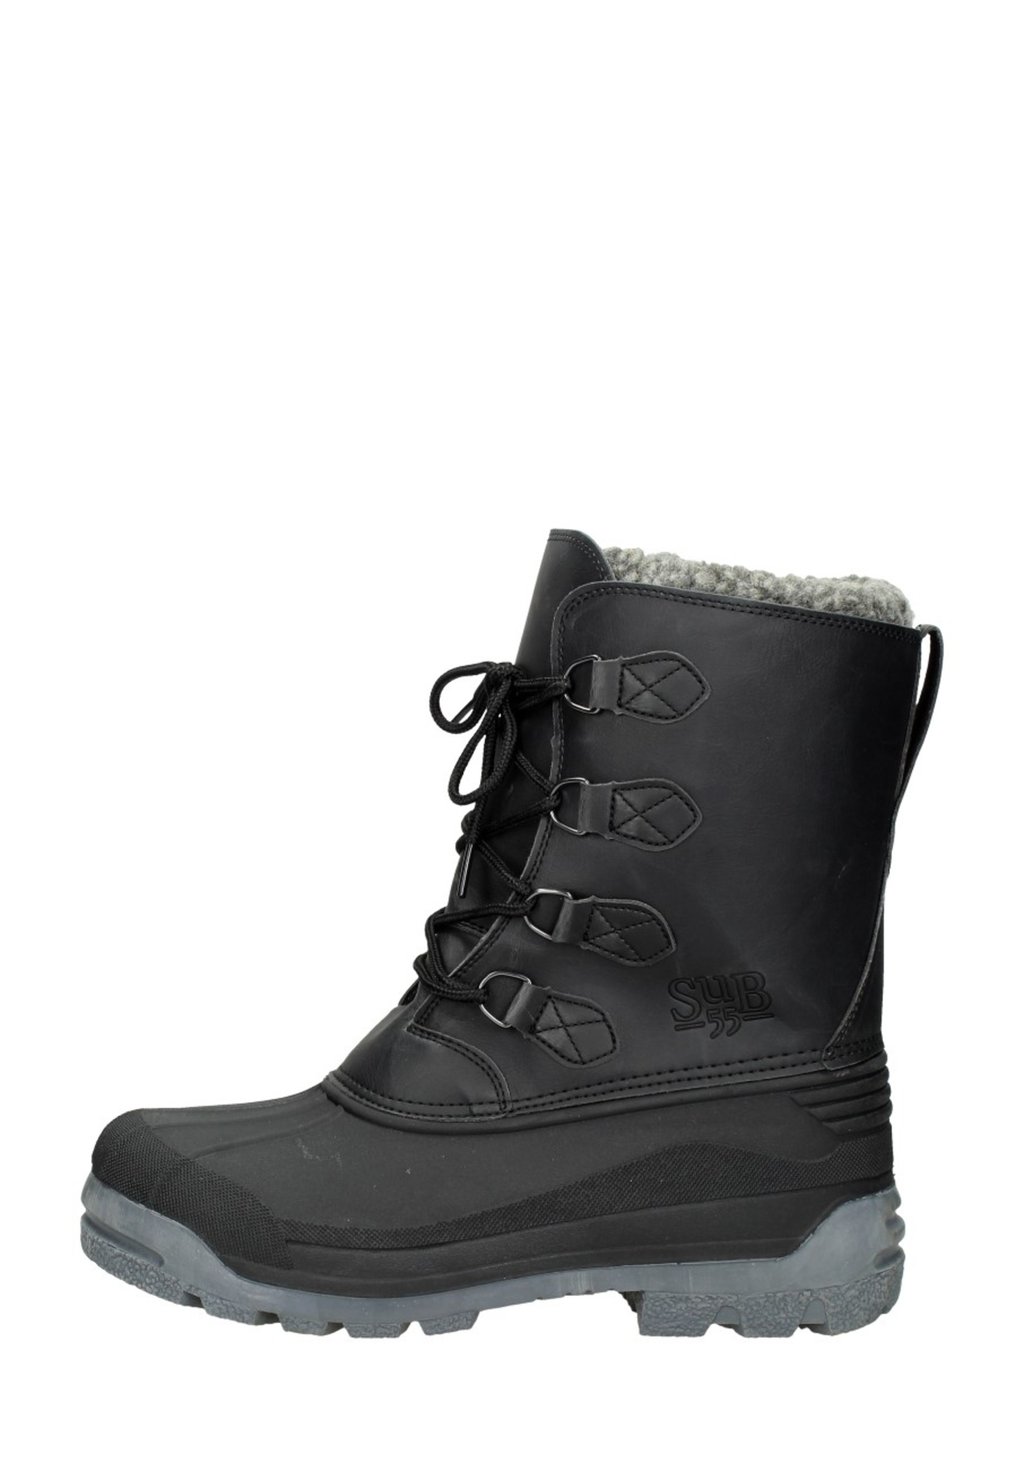 Зимние ботинки SUB55, цвет zwart